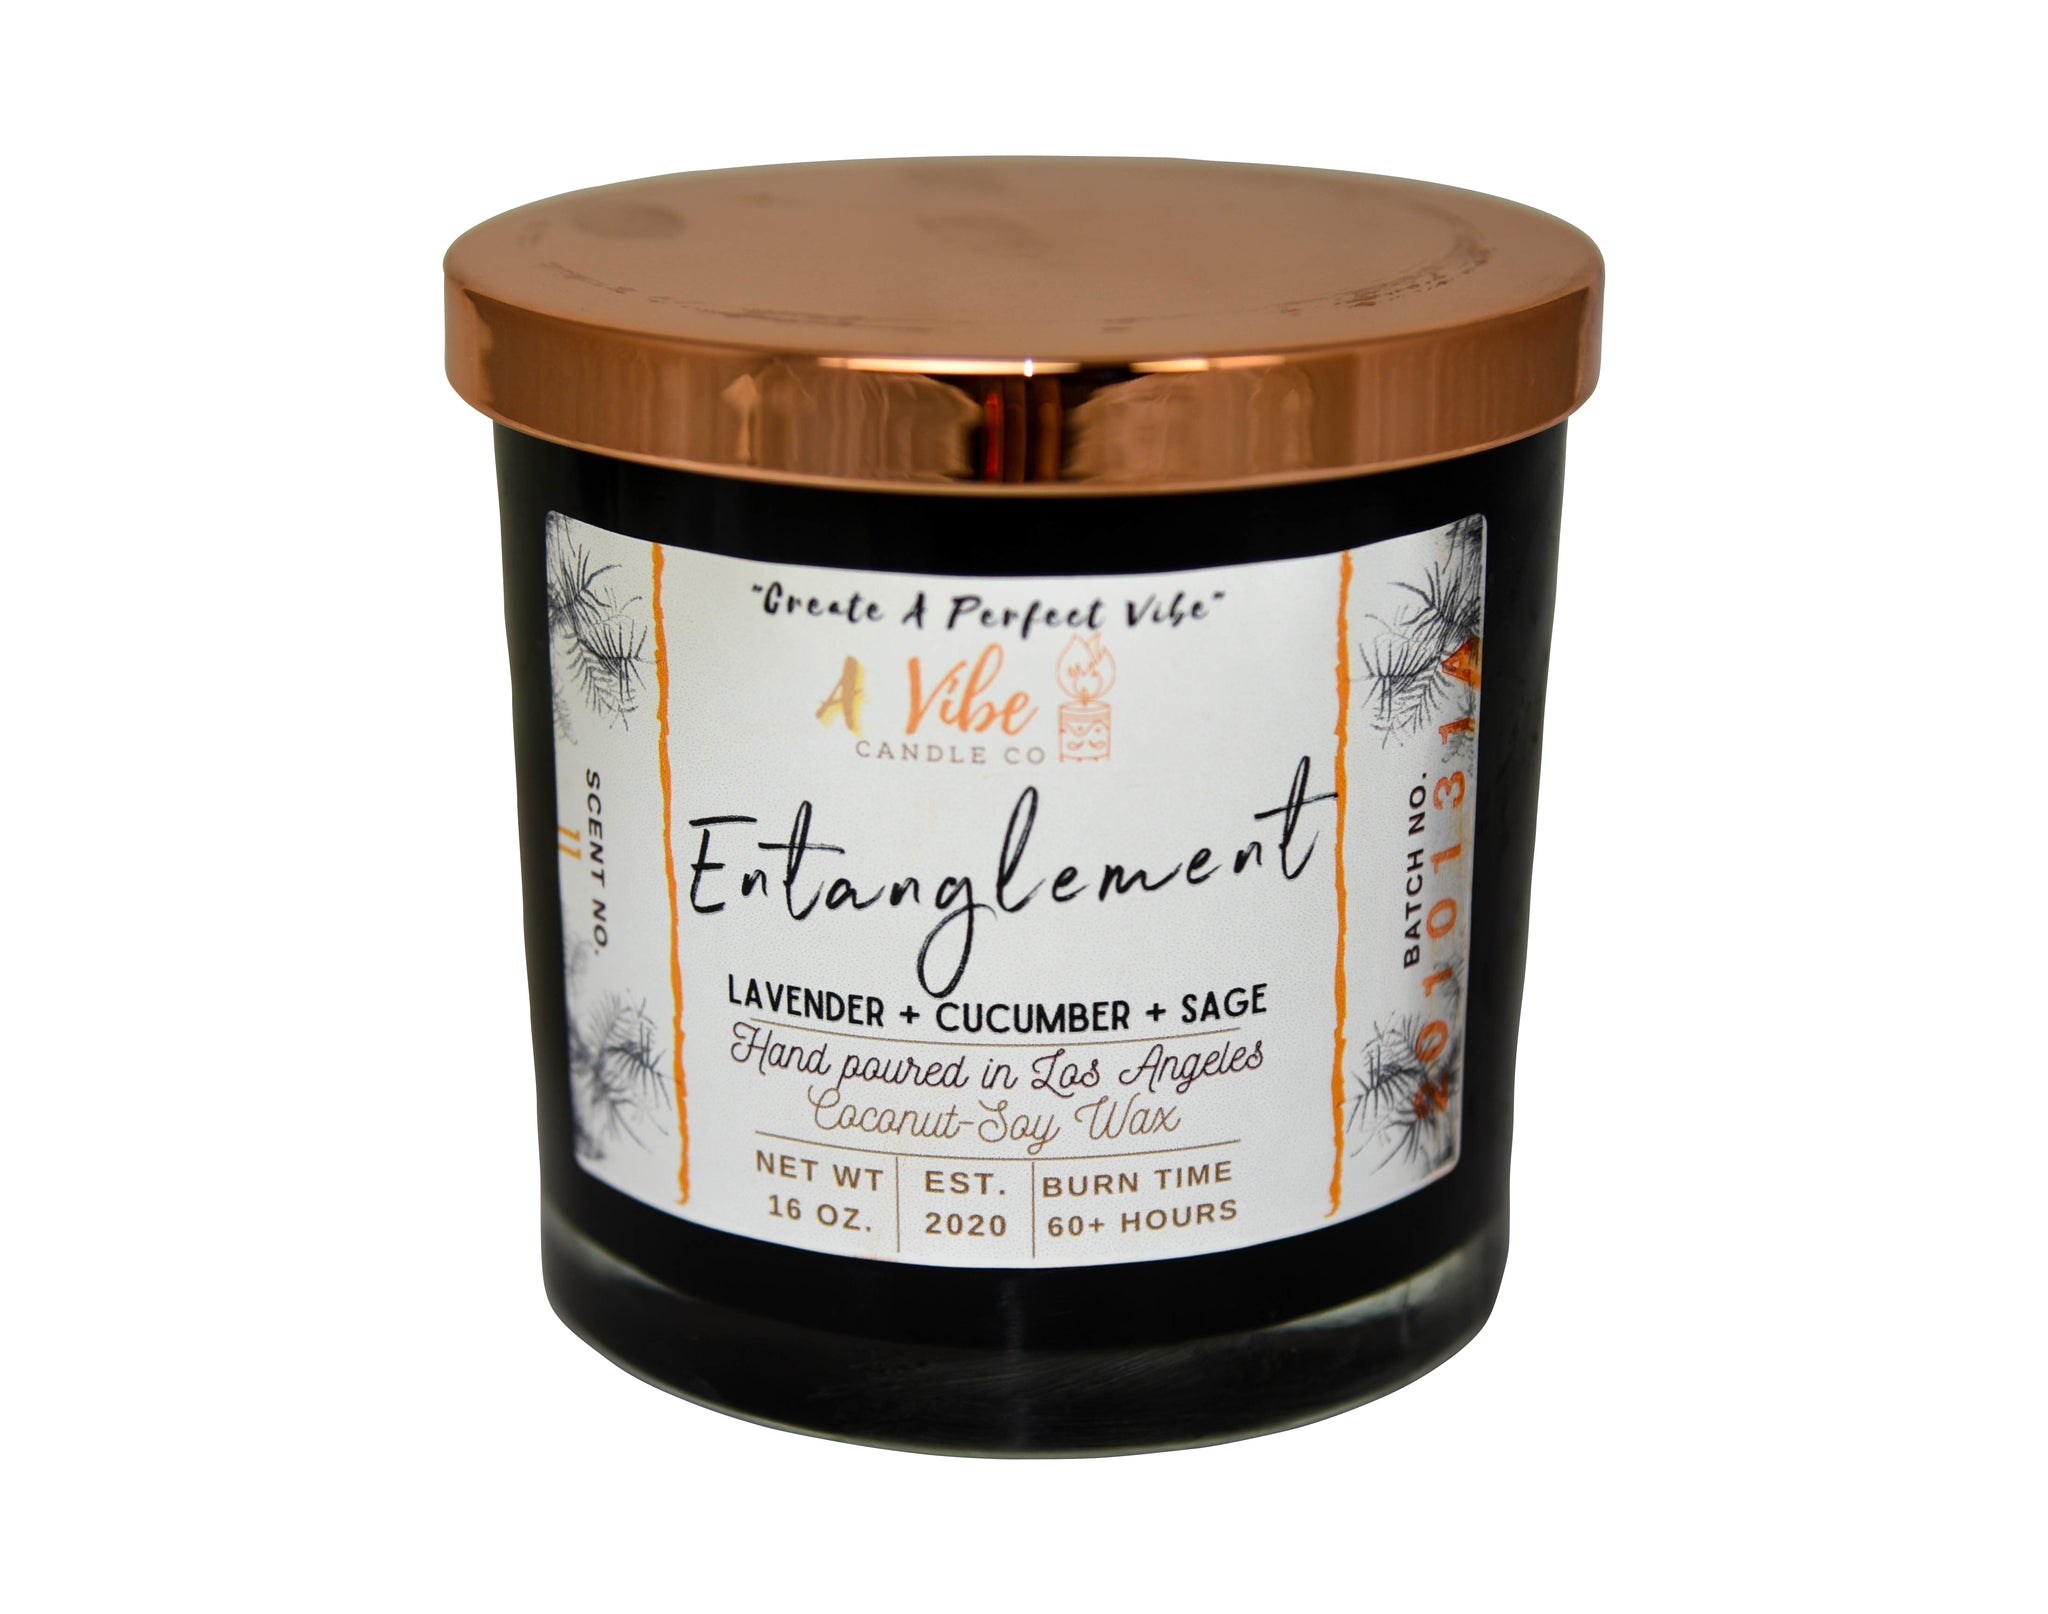 "Entanglement" - Lavender + Cucumber + Sage